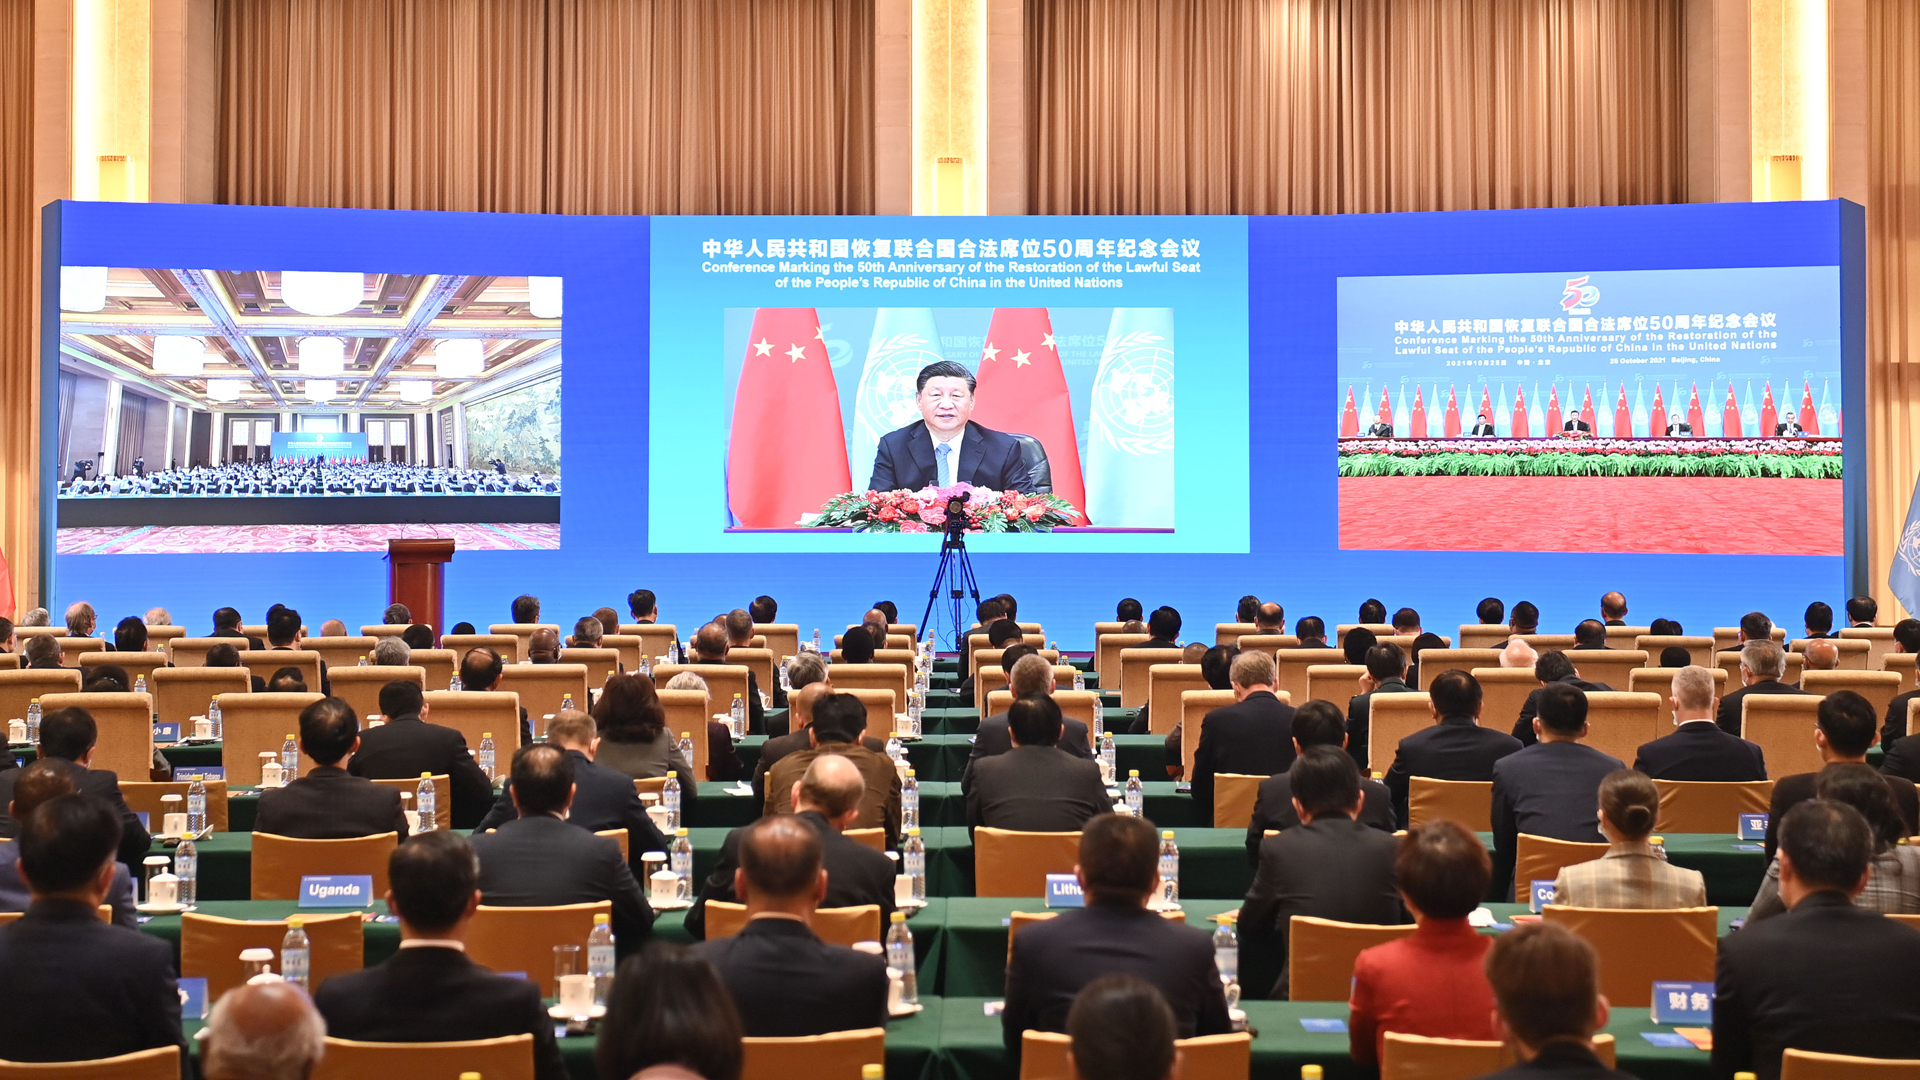 Xi Jinping bei Ansprache vor Publikum